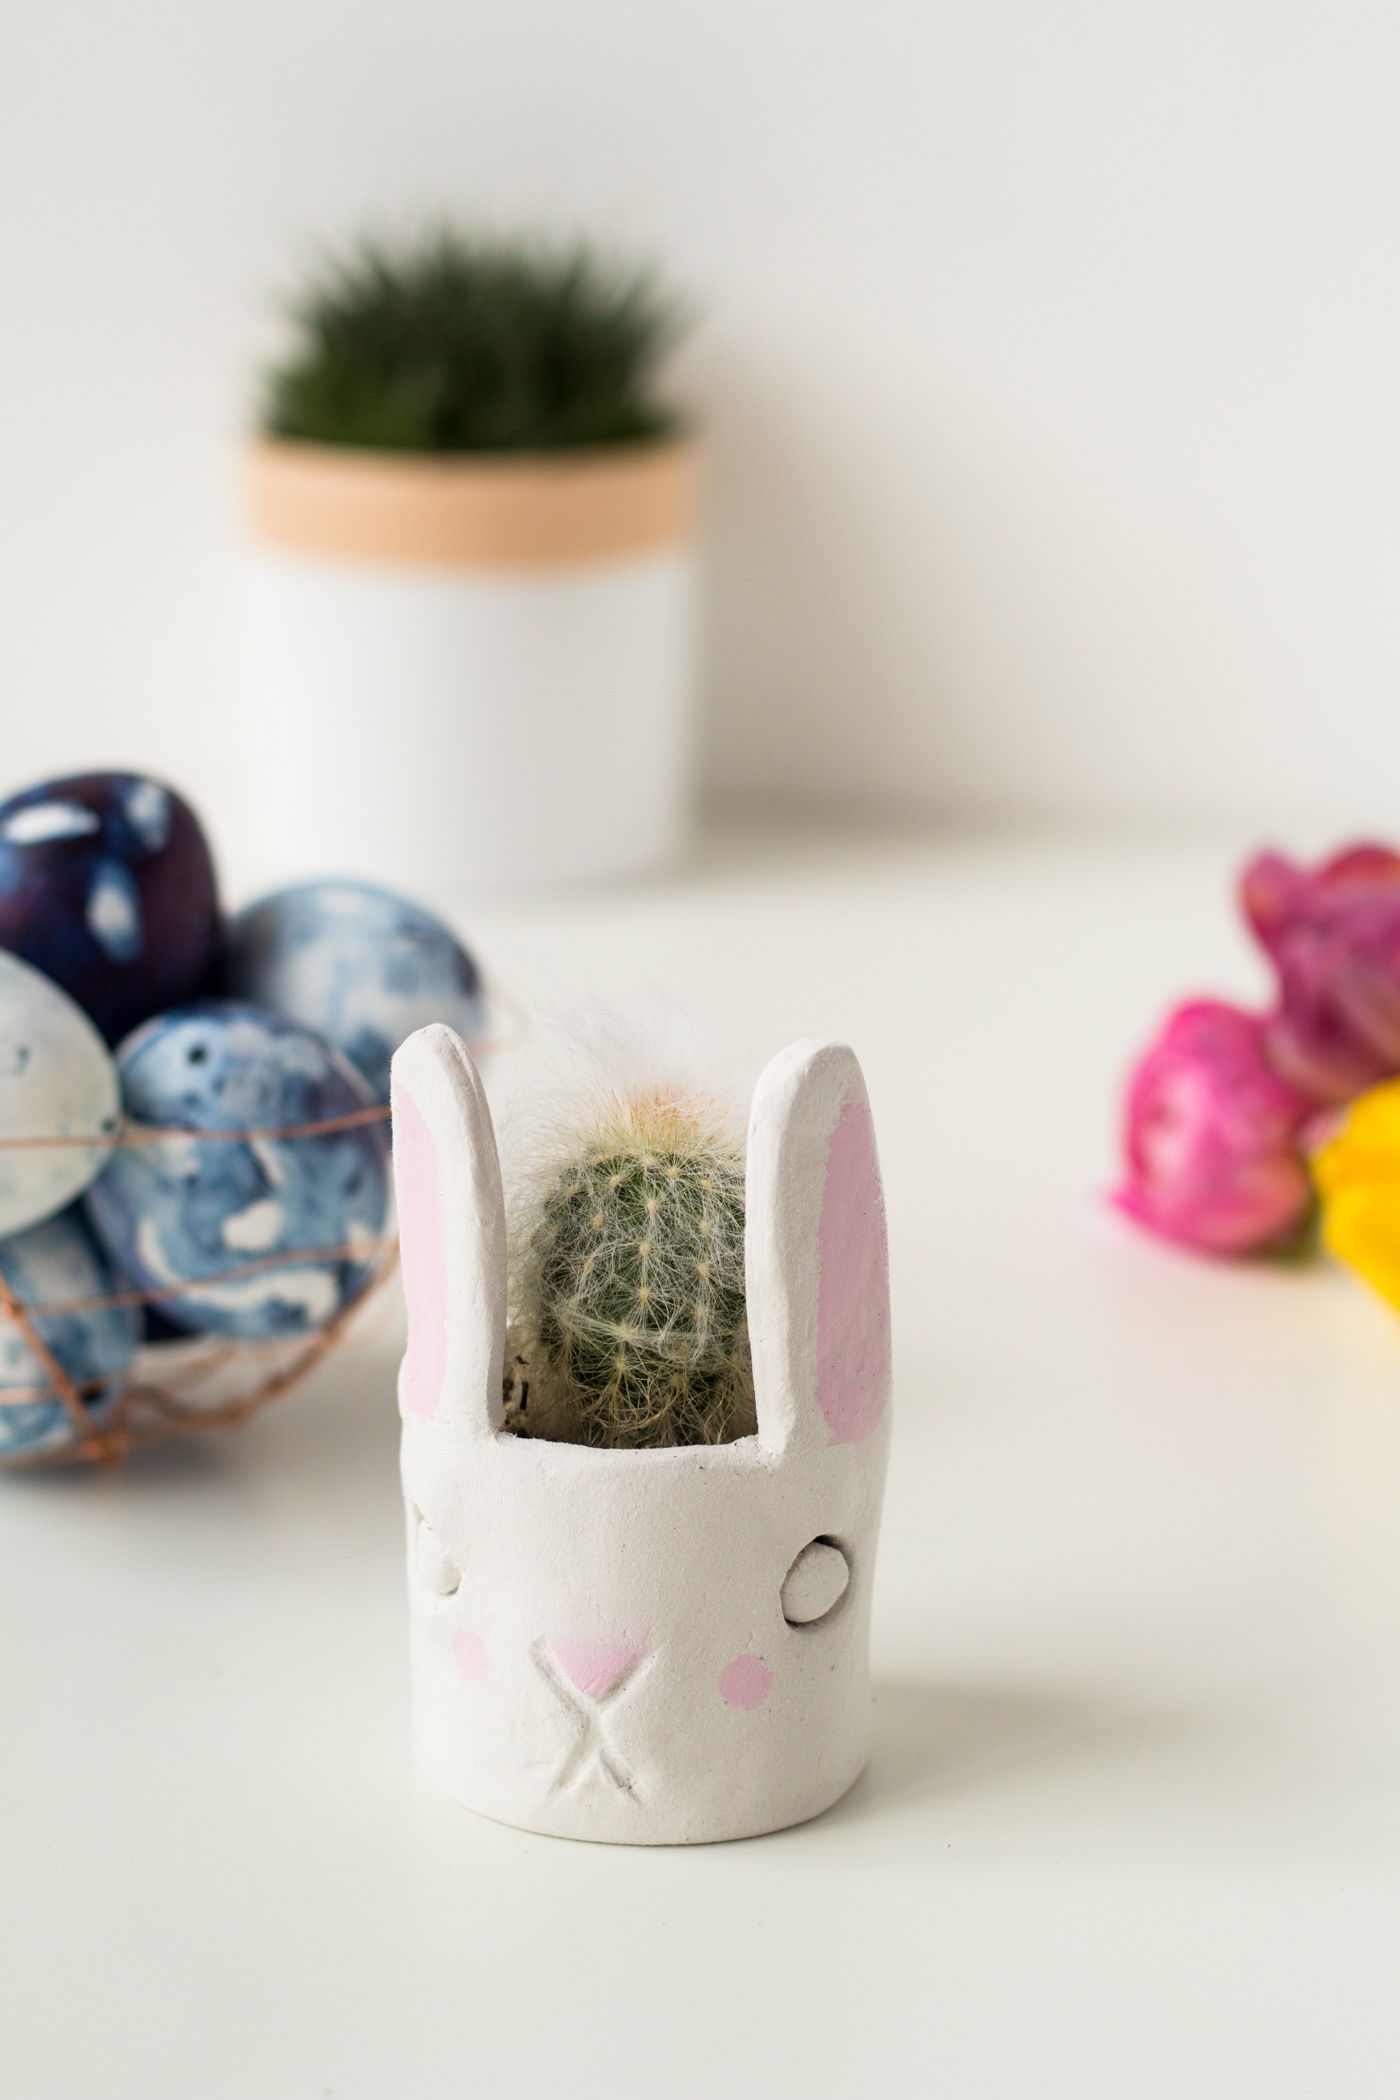 DIY-Mini-Cacti-Bunny-Planter-@fallfordiy-231